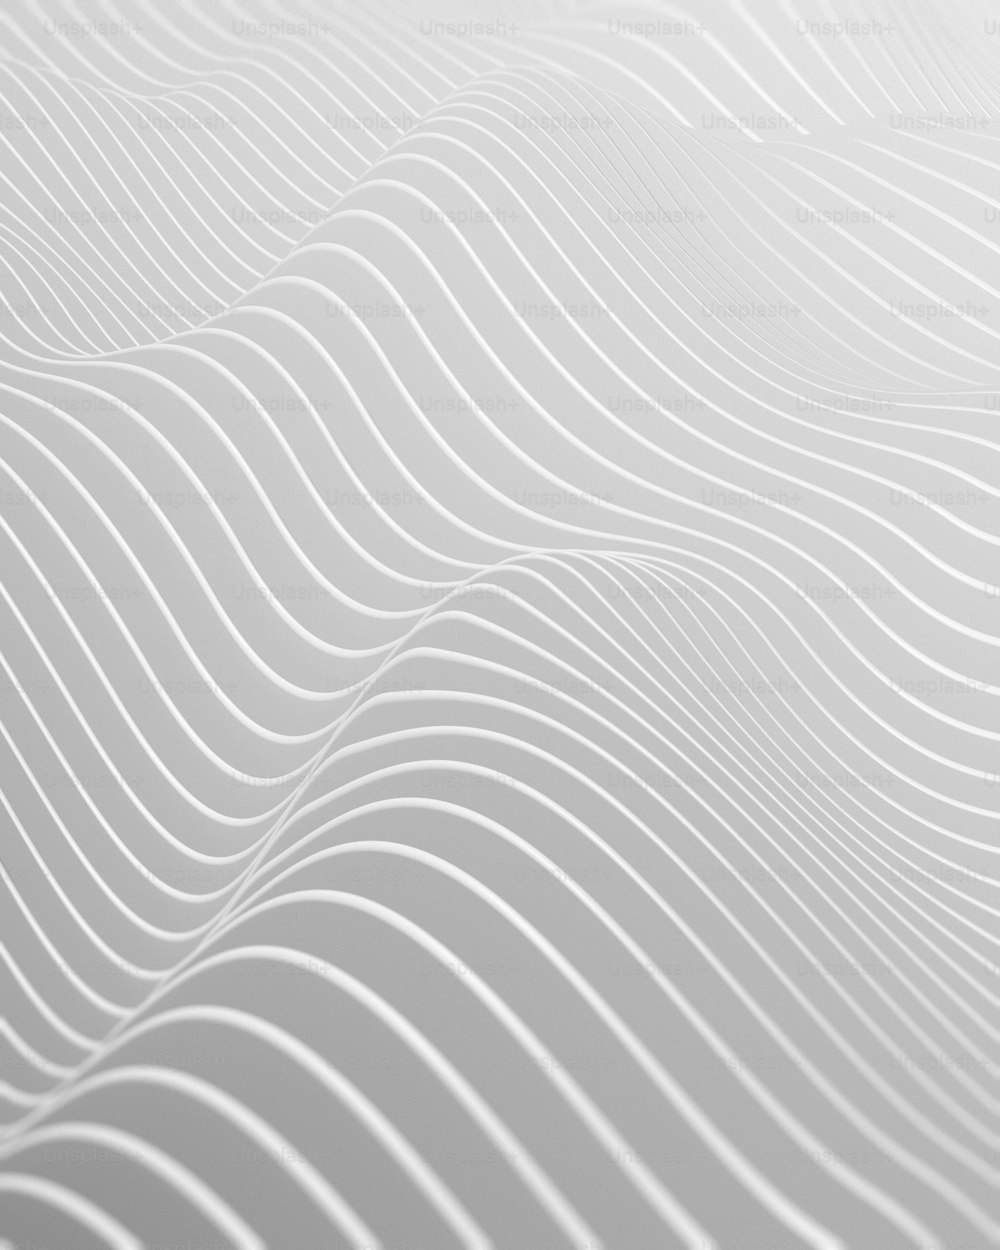 Un fondo blanco abstracto con líneas onduladas